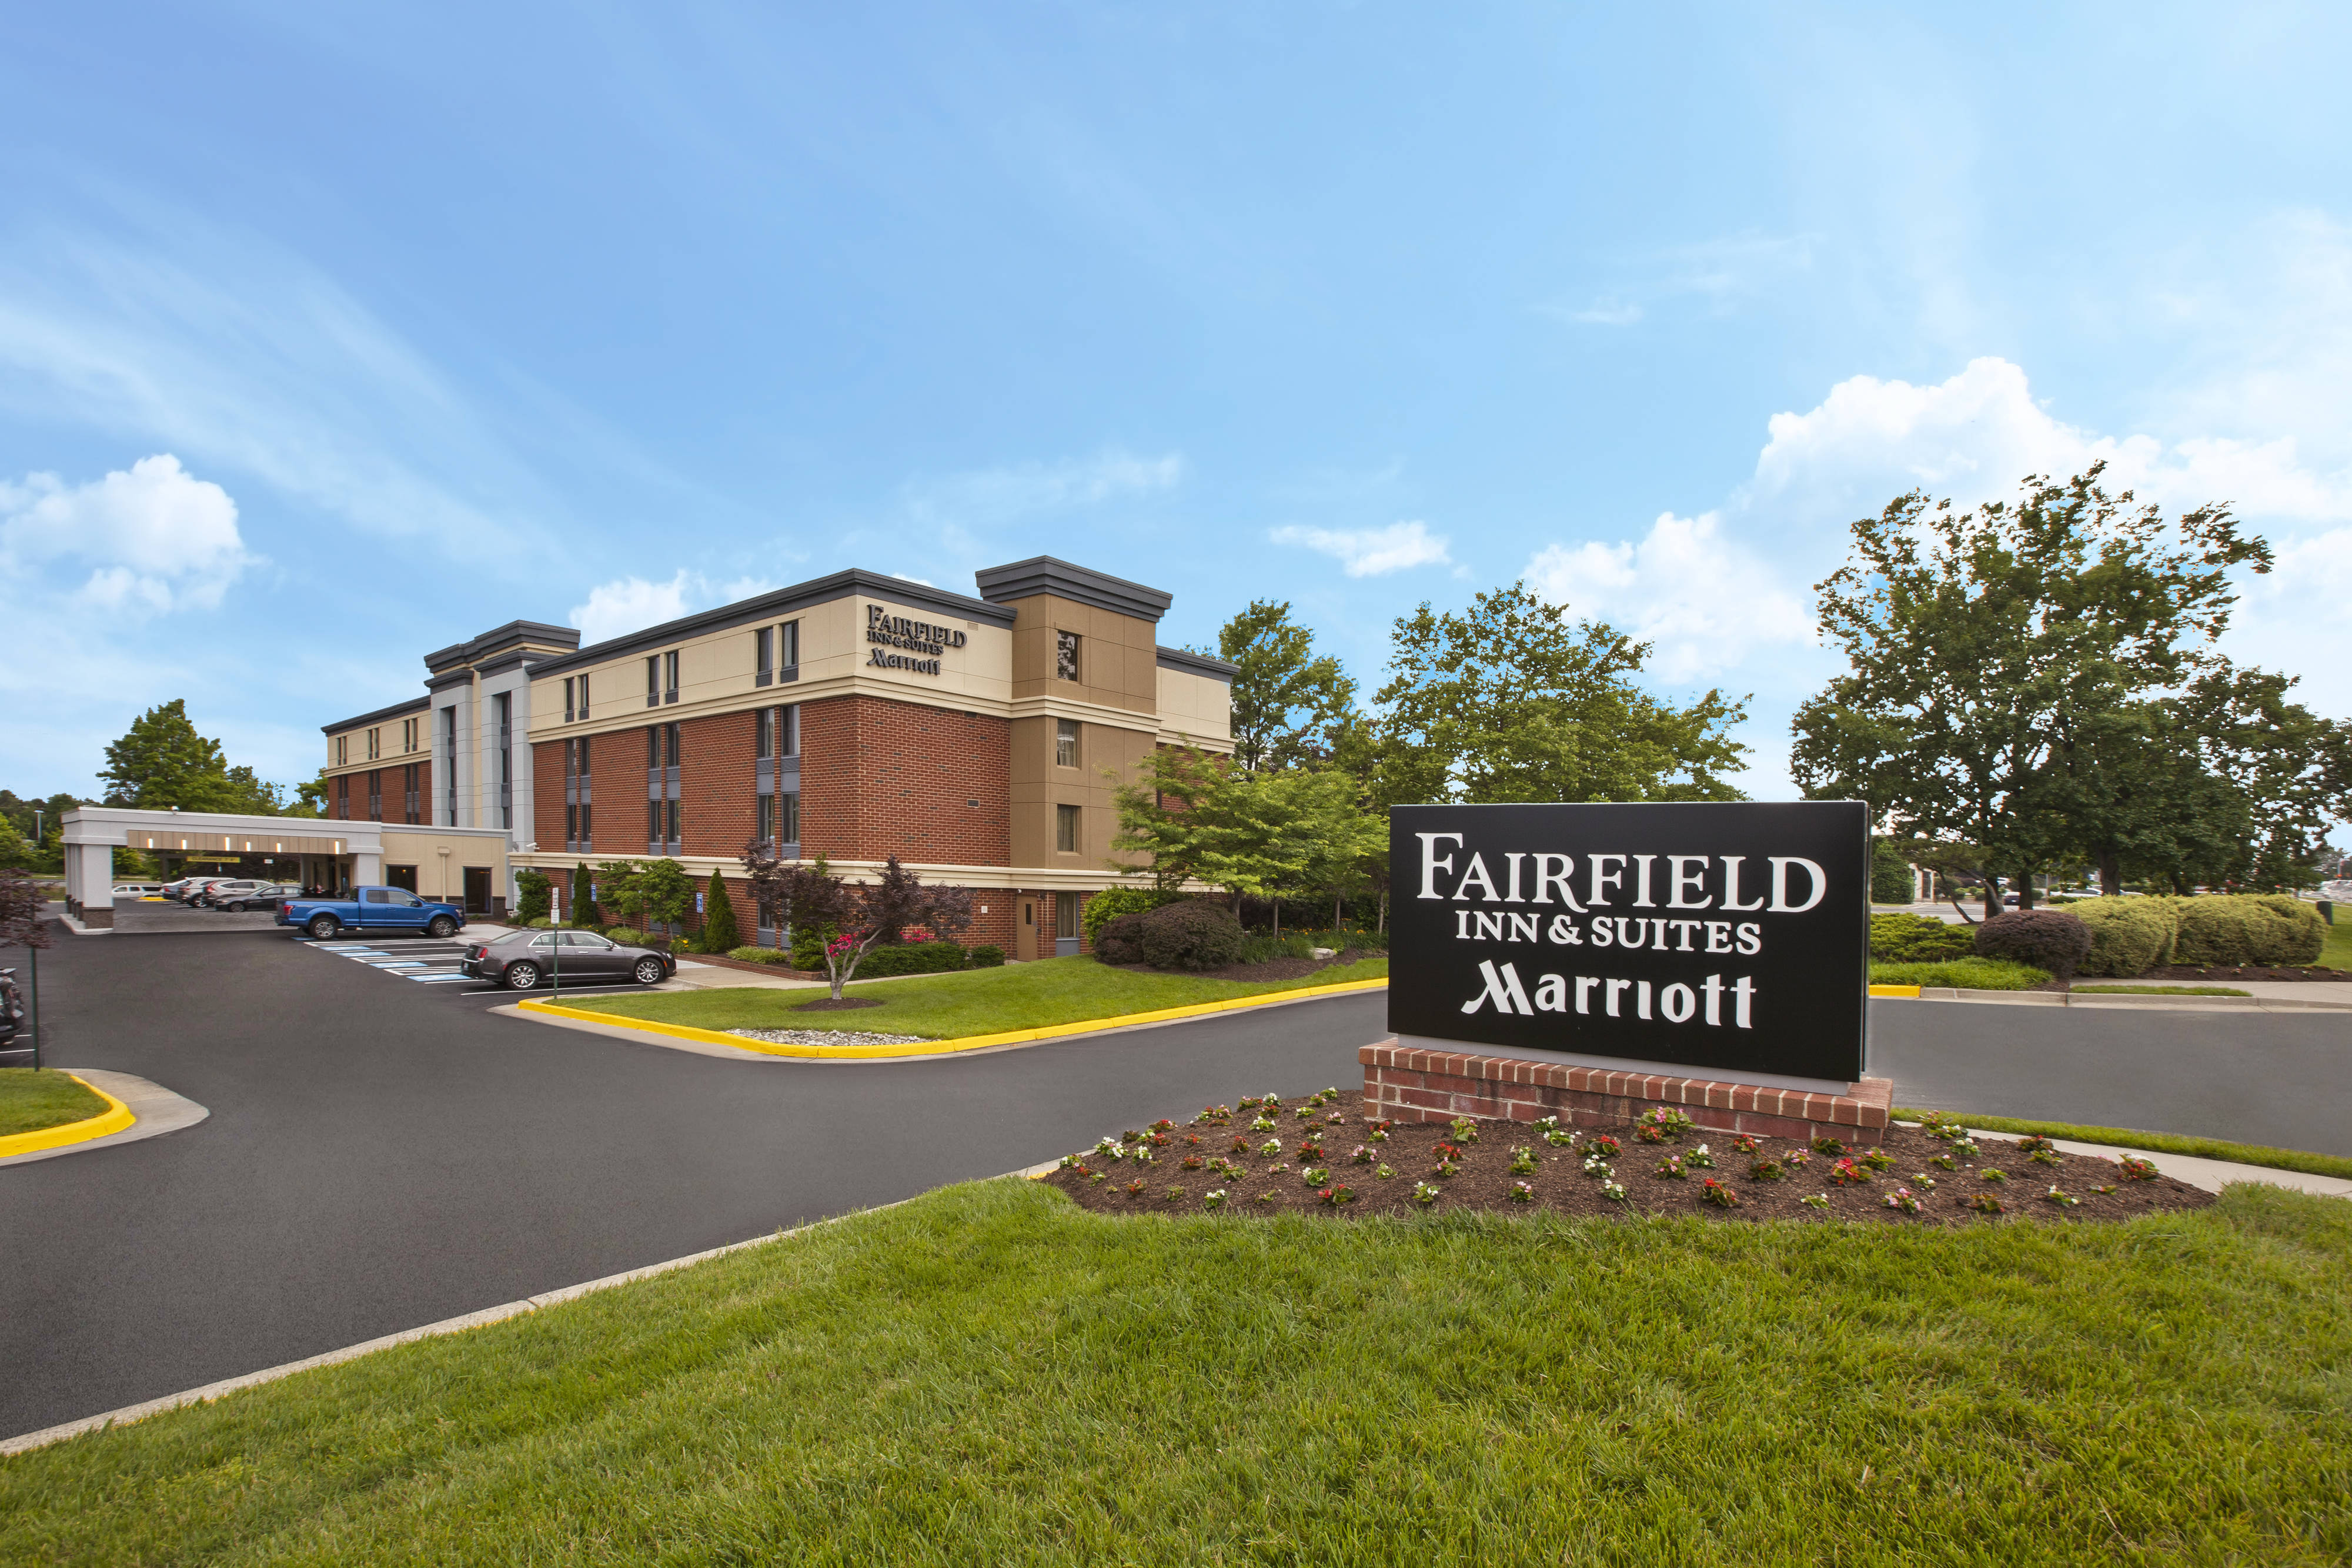 Photo of Fairfield Inn & Suites Dulles Airport Herndon/Reston, Herndon, VA